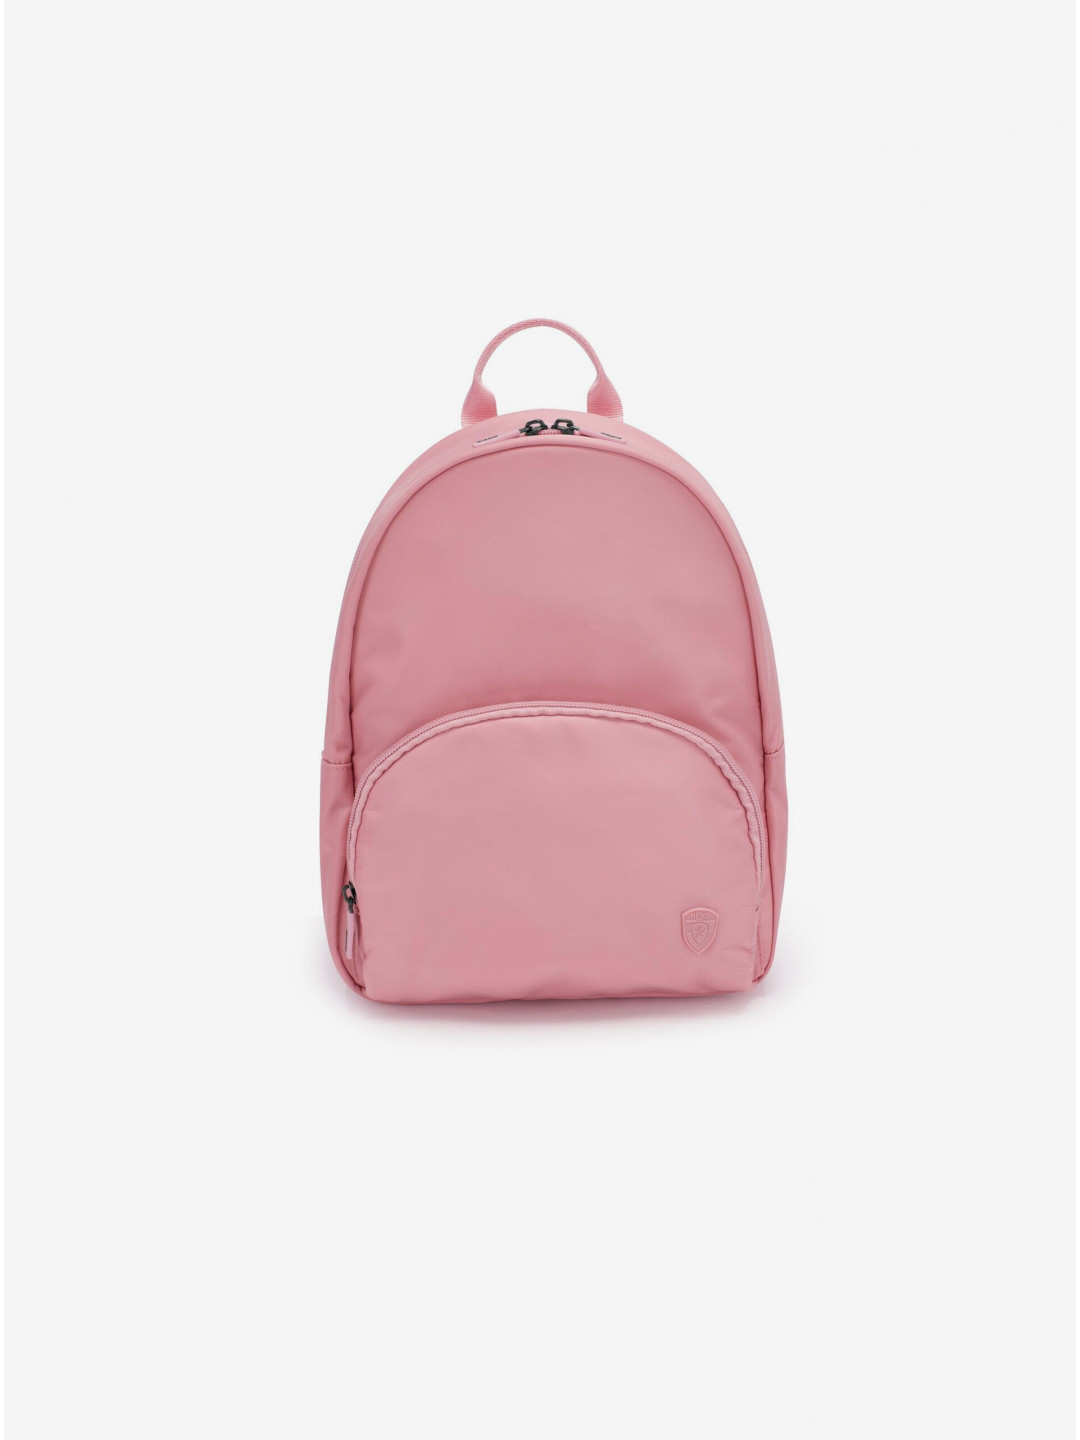 Růžový dámský batoh Heys Basic Backpack Dusty Pink